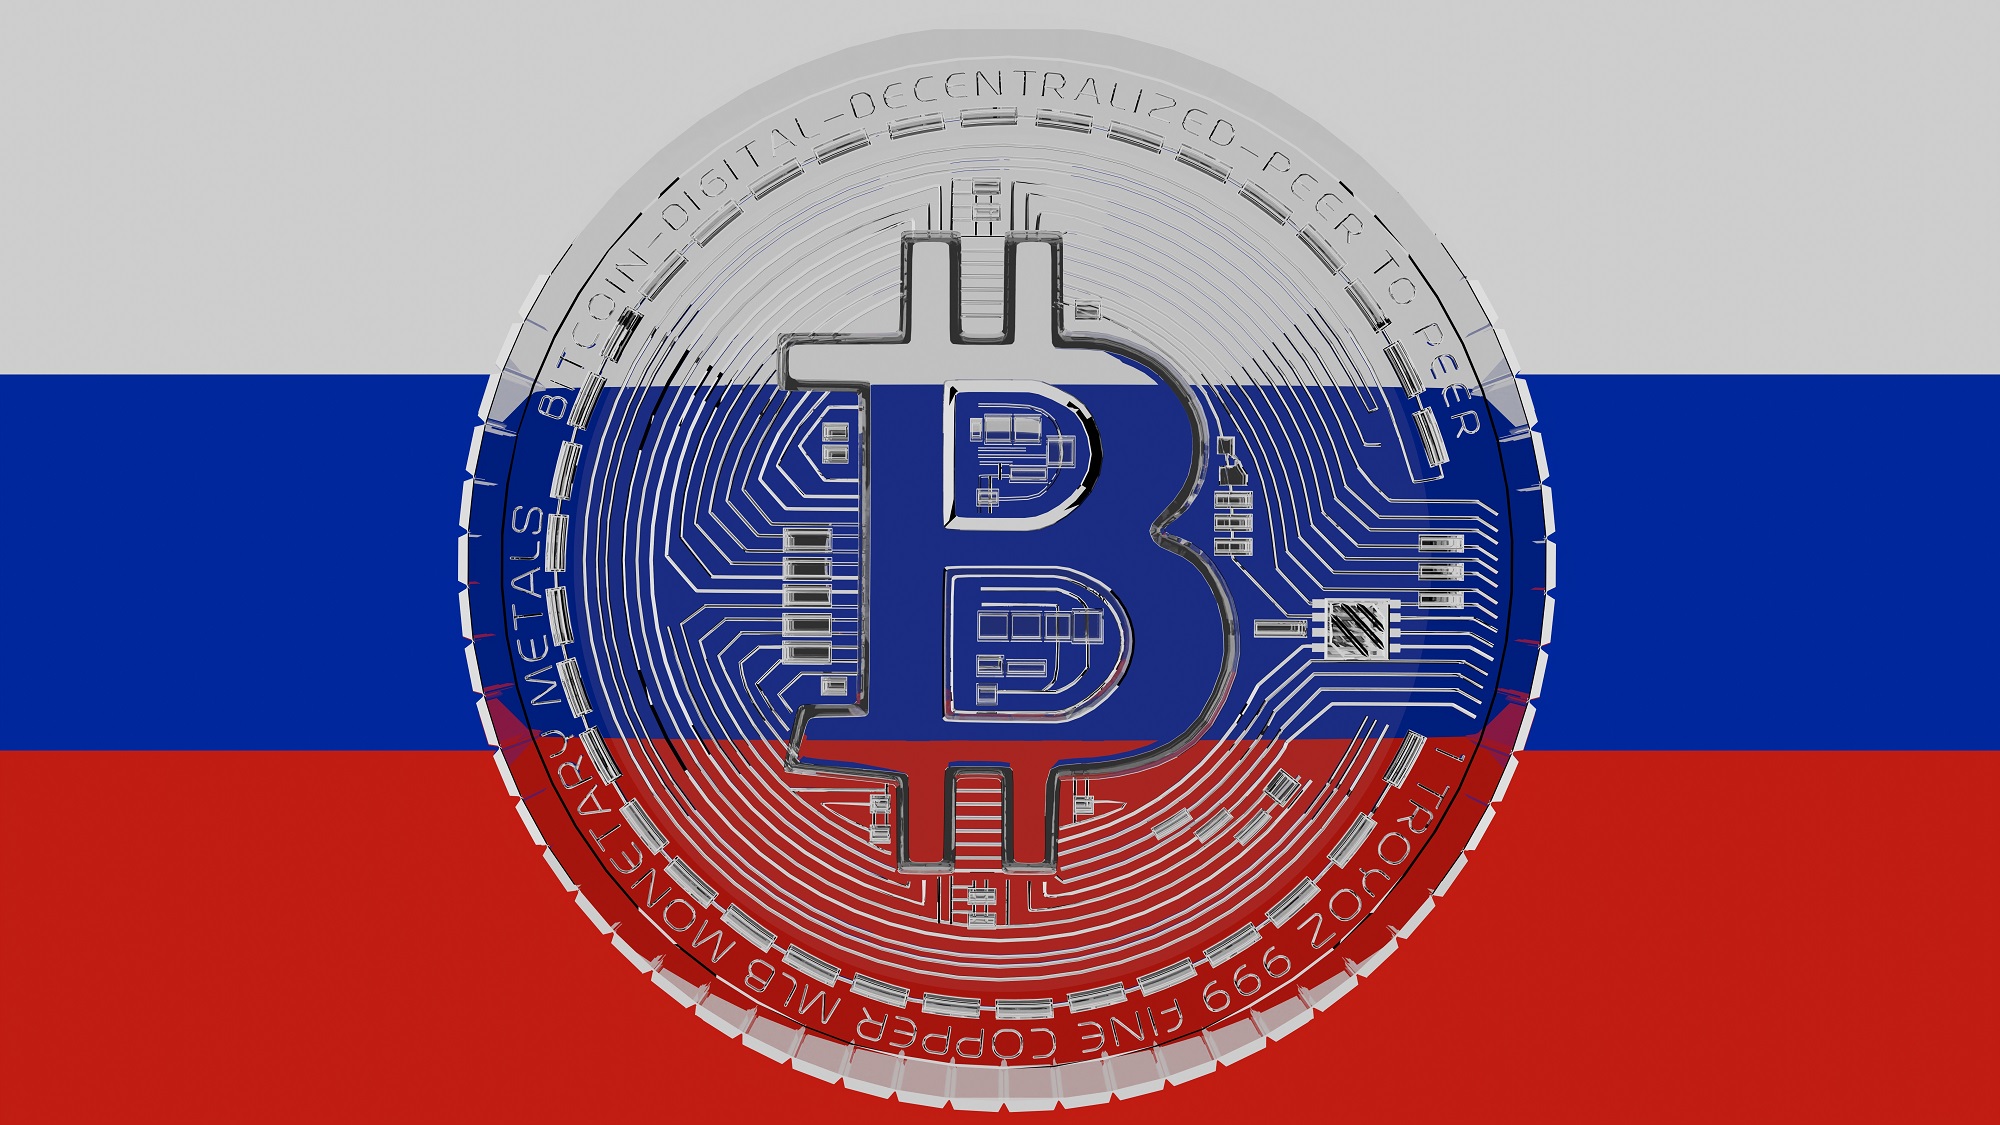 Russische Abgeordnete debattieren in den kommenden Wochen über ein Krypto-Gesetz - ist die Regulierung endlich auf dem Weg?